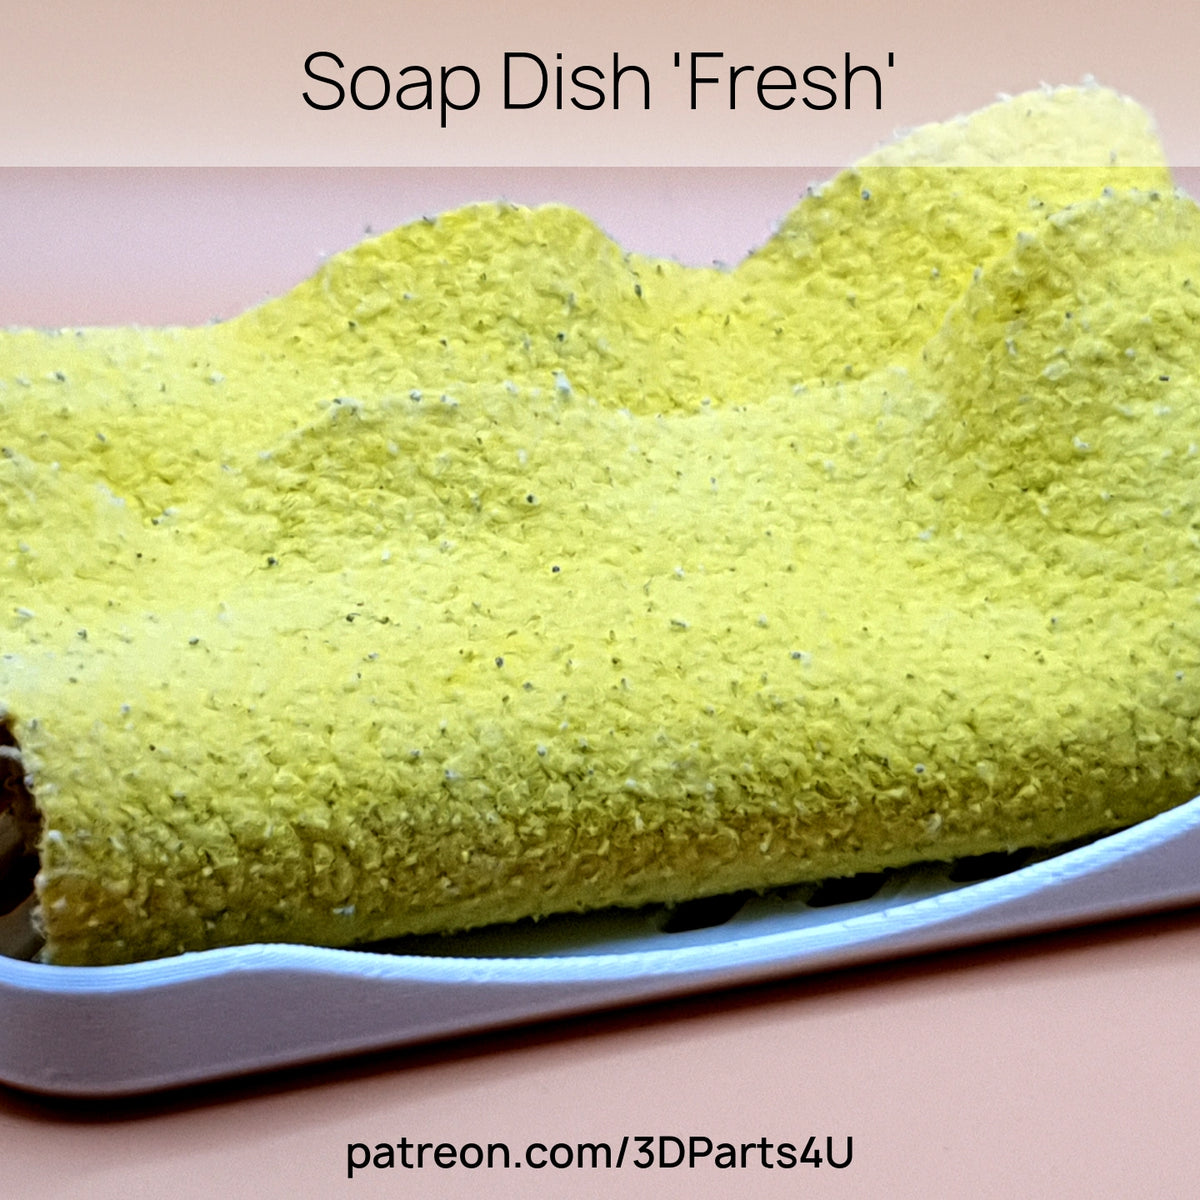 Soap Dish 'Fresh'